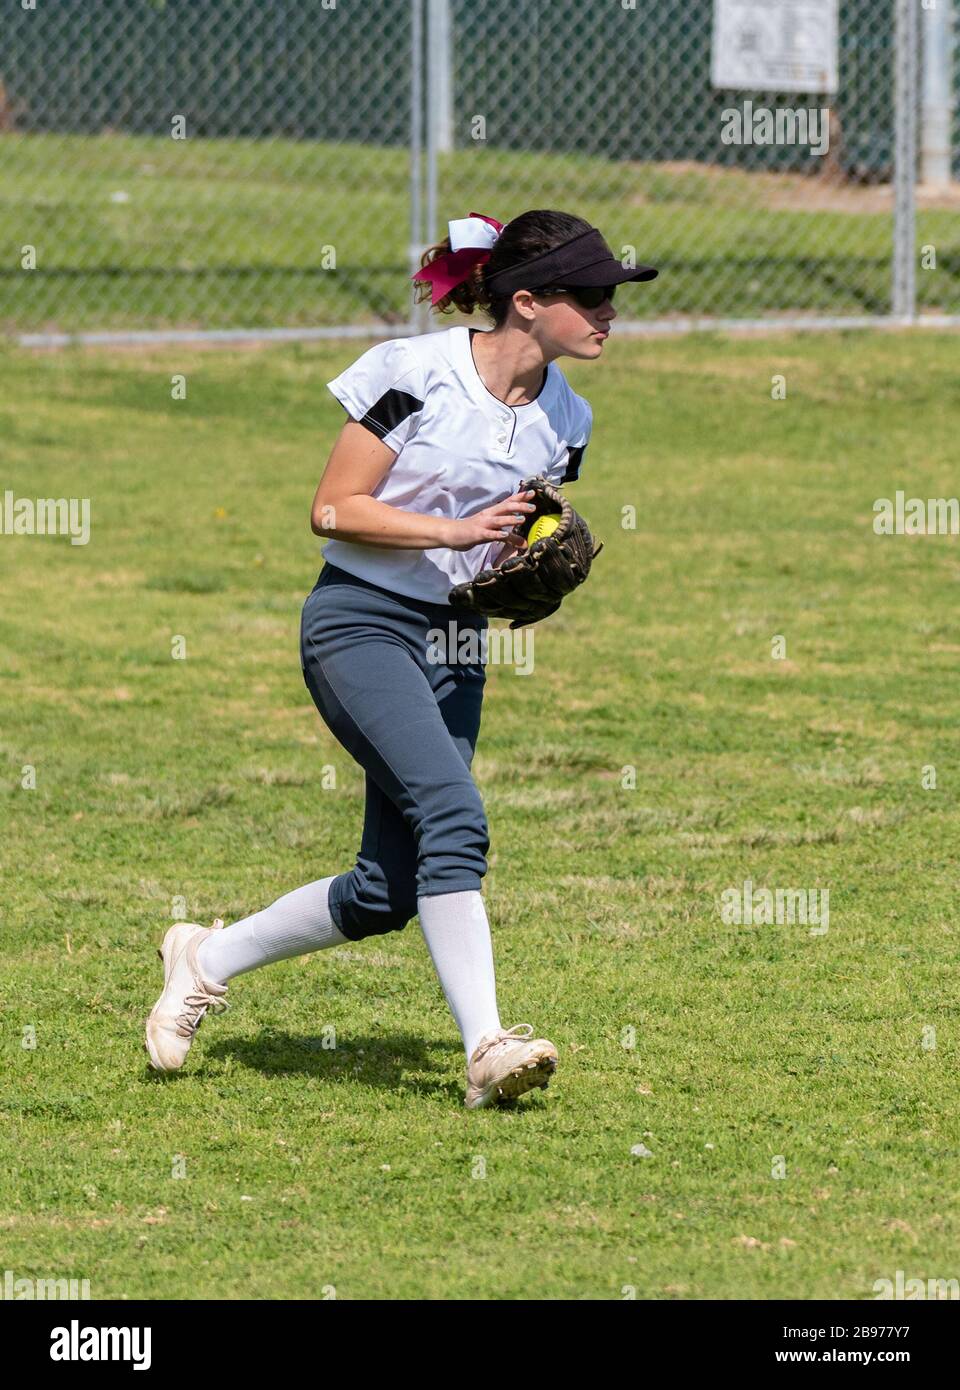 Terrain de softball à pas rapide, survolteur avec lunettes de soleil, qui manipule un ballon sur l'herbe dans l'outfield. Banque D'Images